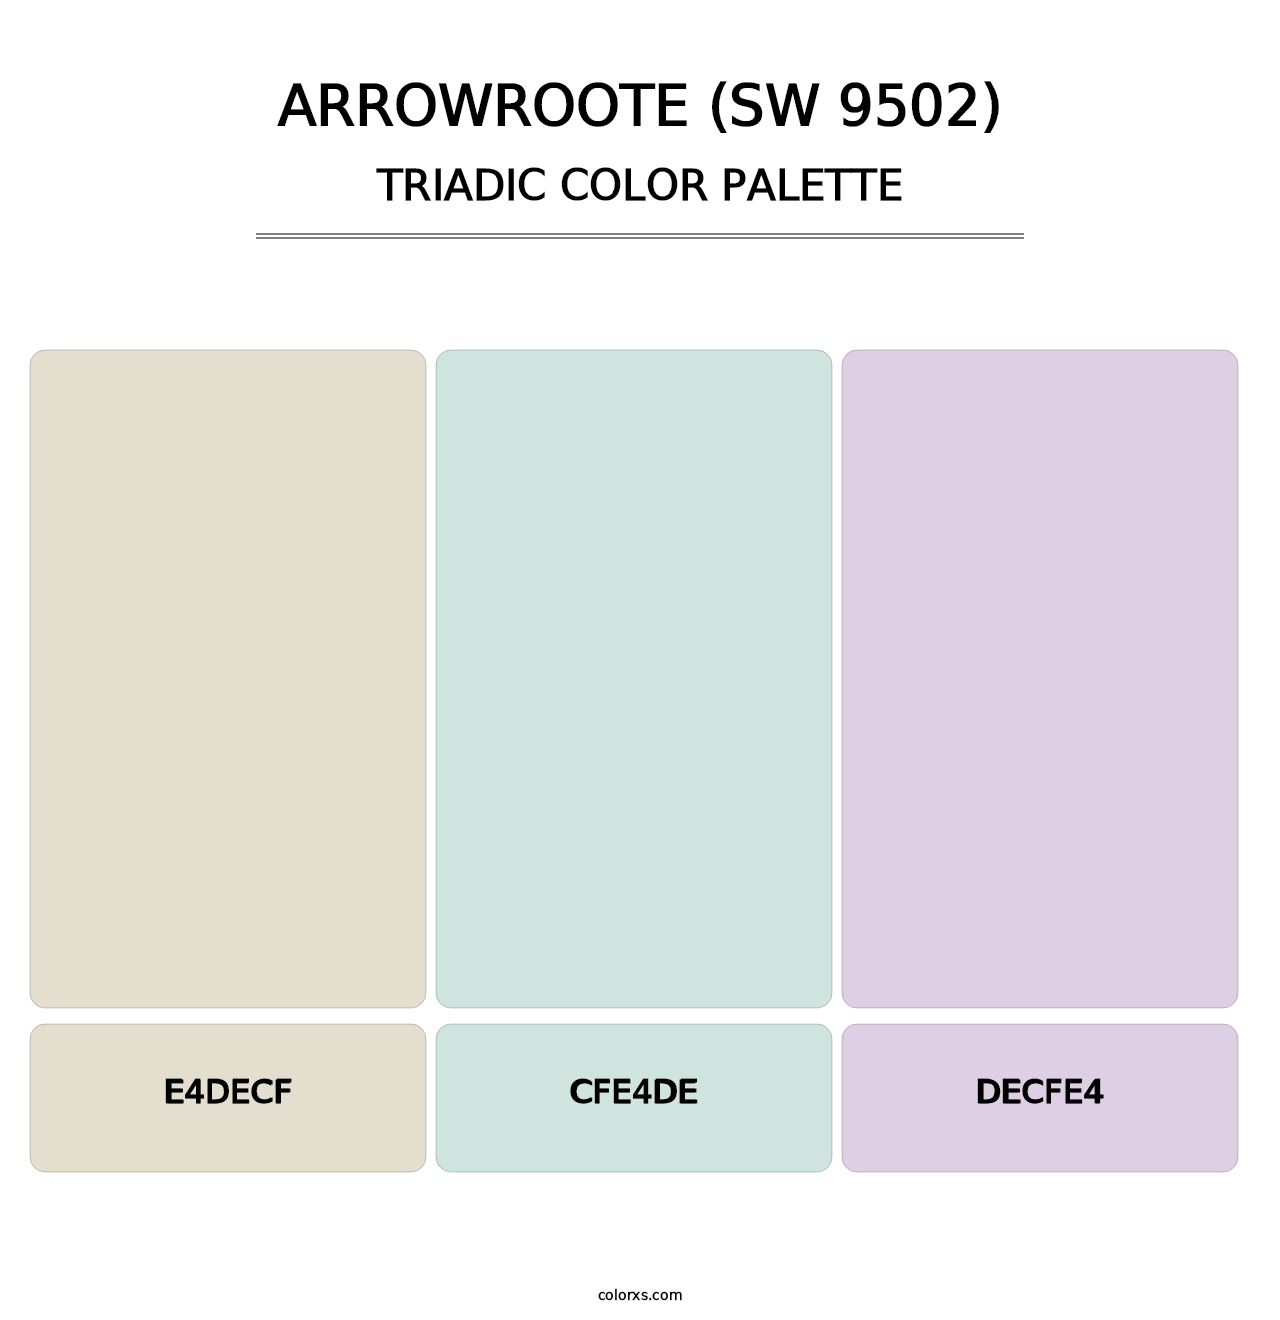 Arrowroote (SW 9502) - Triadic Color Palette